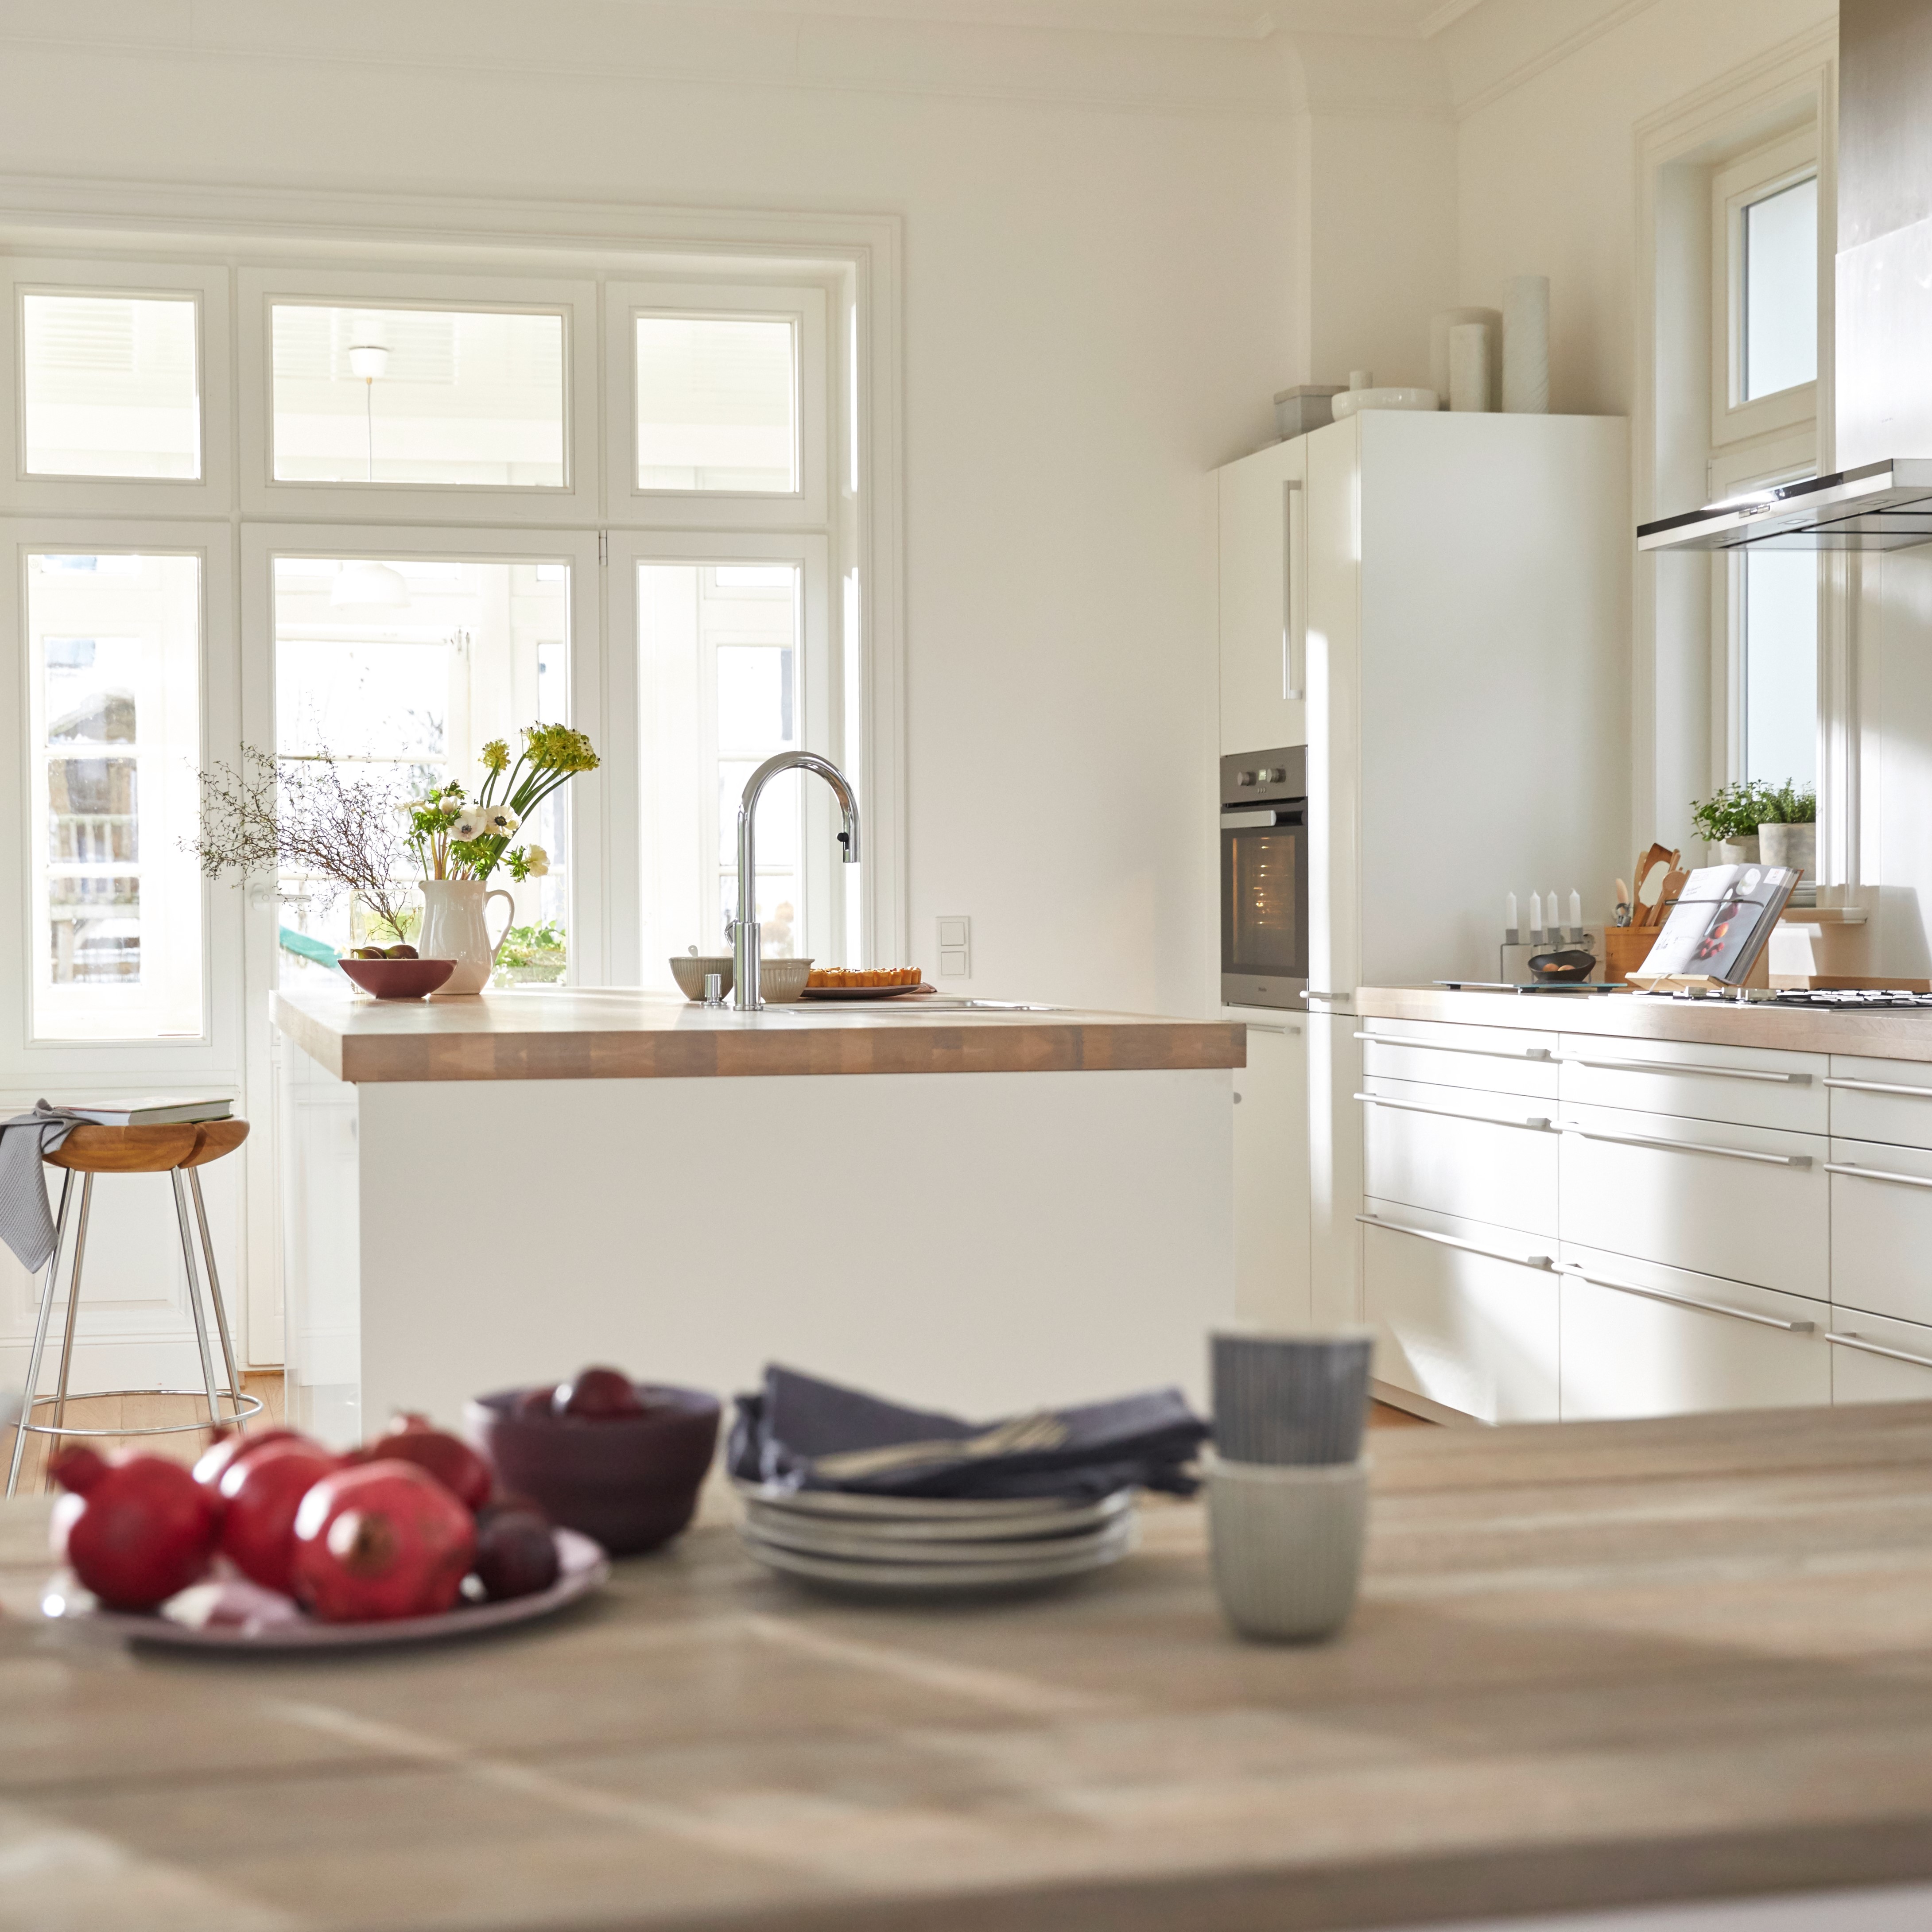 View into a modern, white kitchen